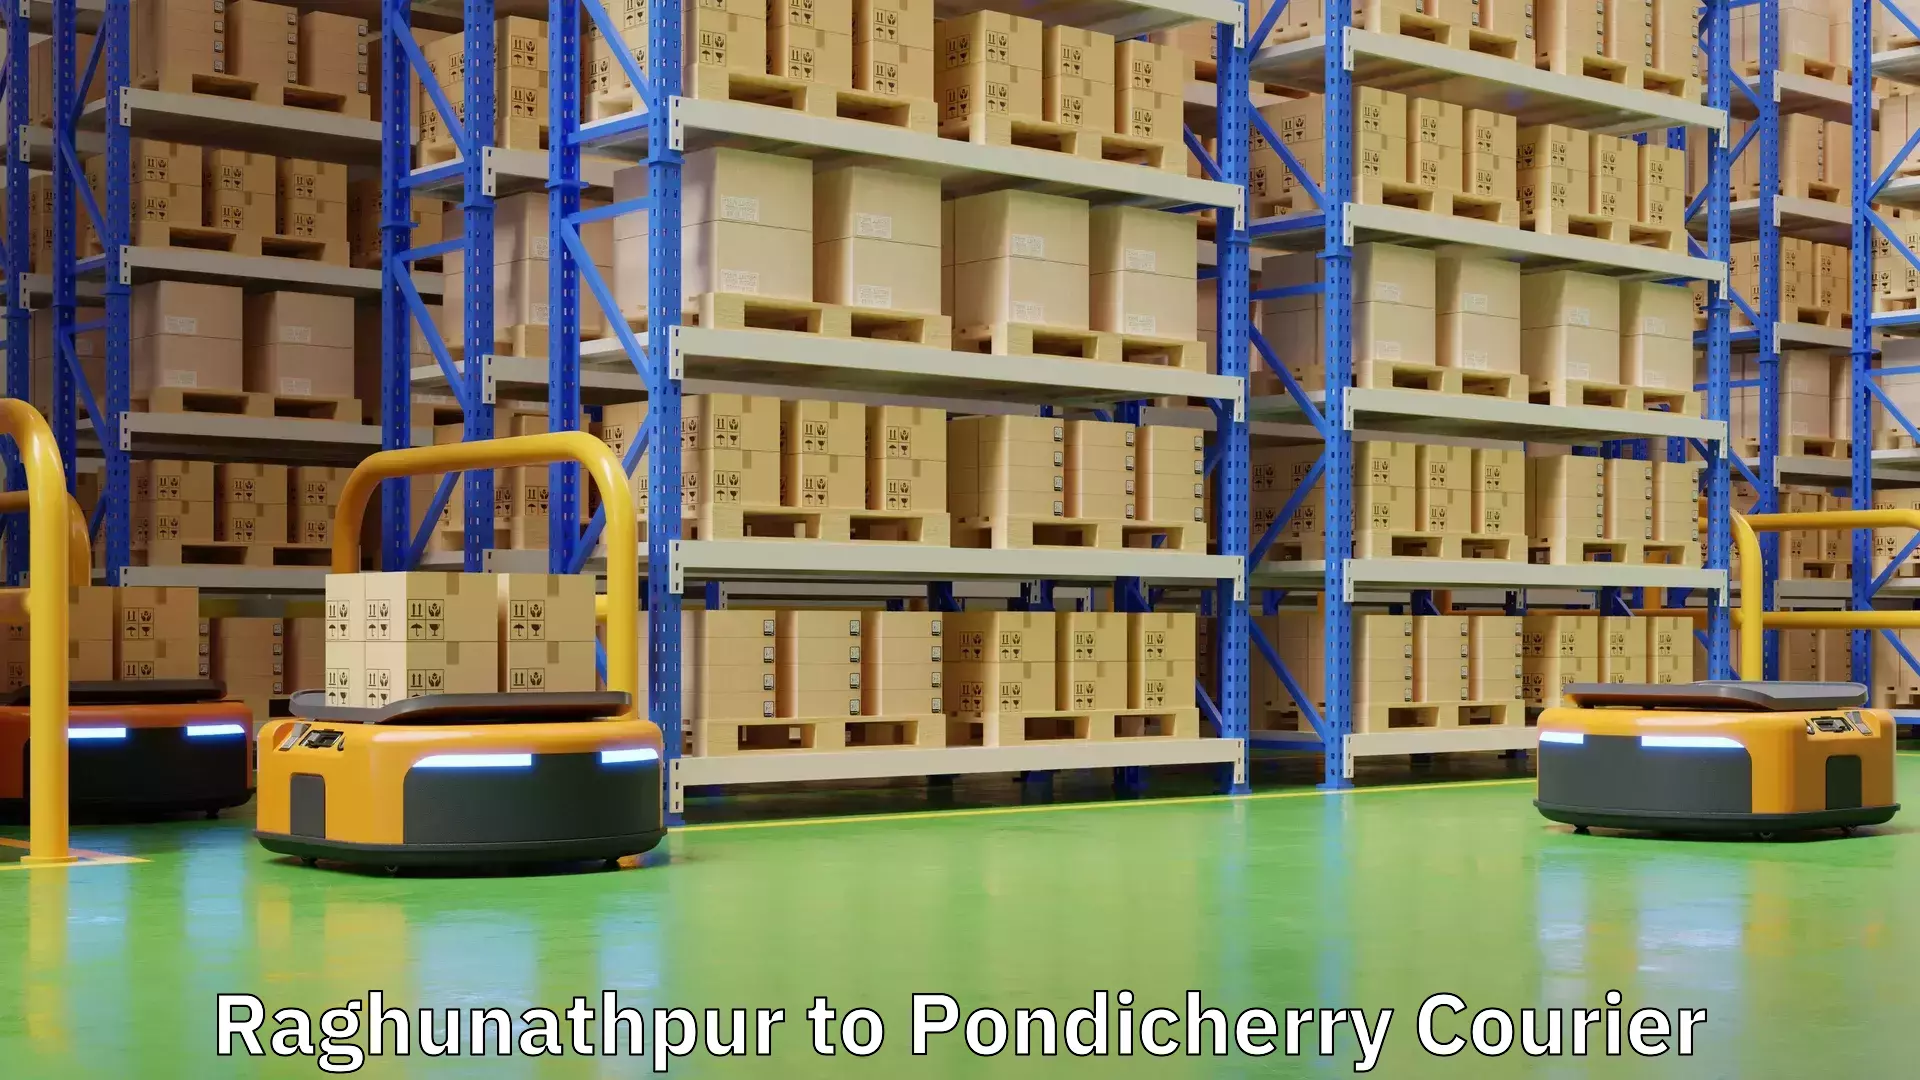 Nationwide shipping capabilities Raghunathpur to Pondicherry